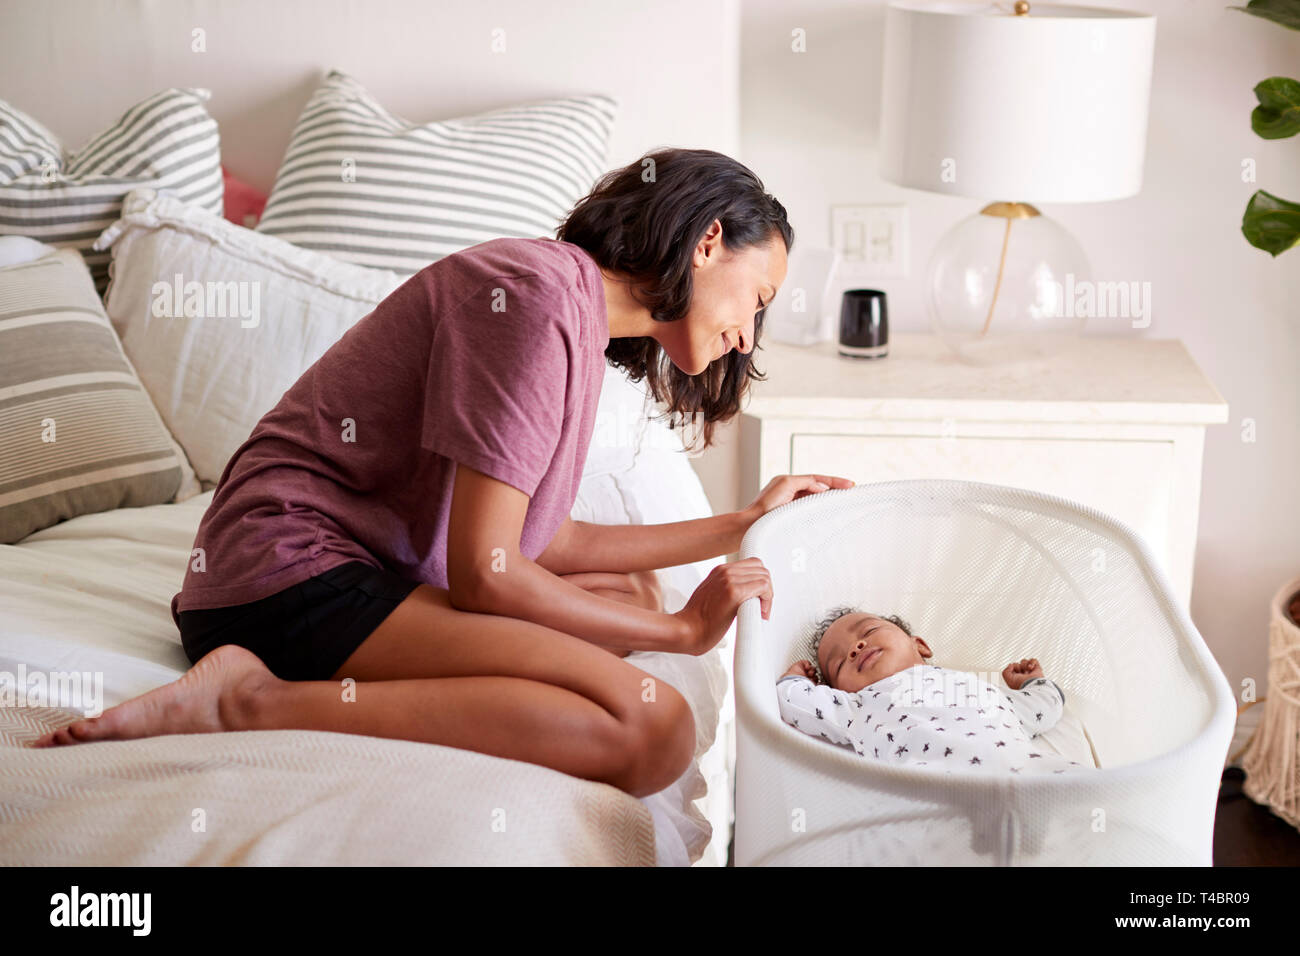 Junge Erwachsene Mutter kniet auf dem Bett und sah auf ihre drei Monate alten Baby schlafend in seinem Kinderbett, Seitenansicht Stockfoto